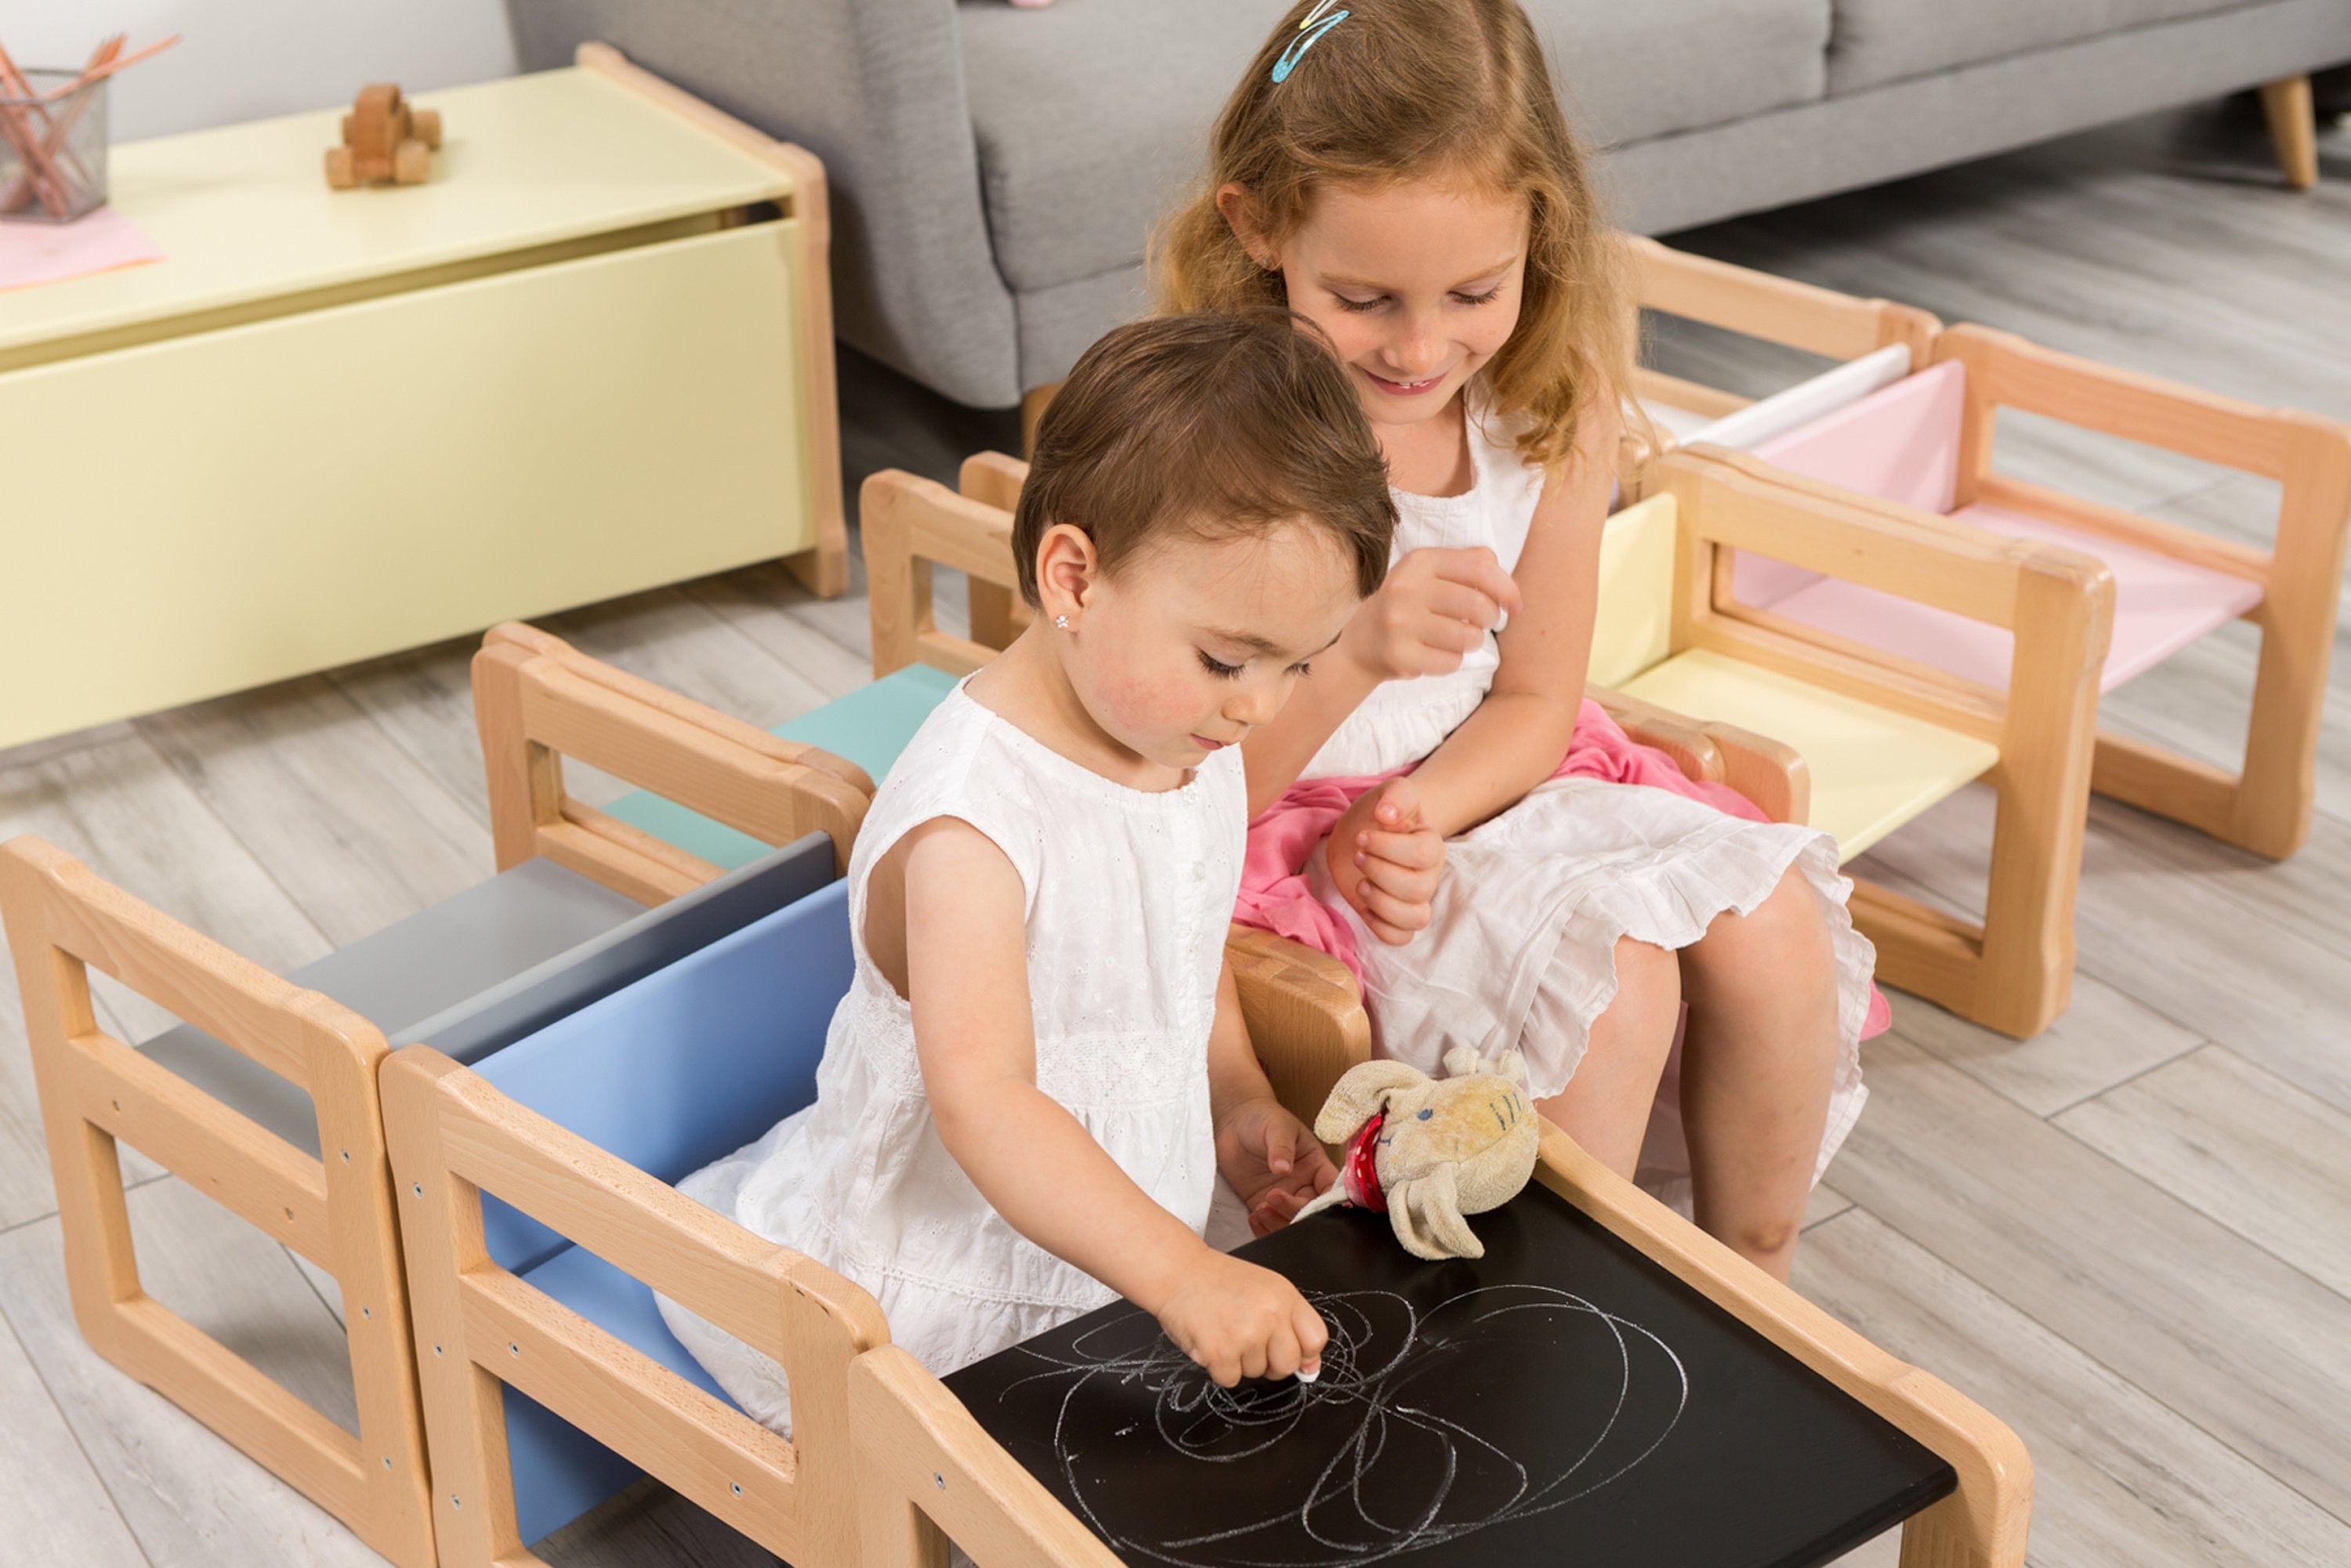 Chaise évolutive Montessori - La Fabrique des Potirons